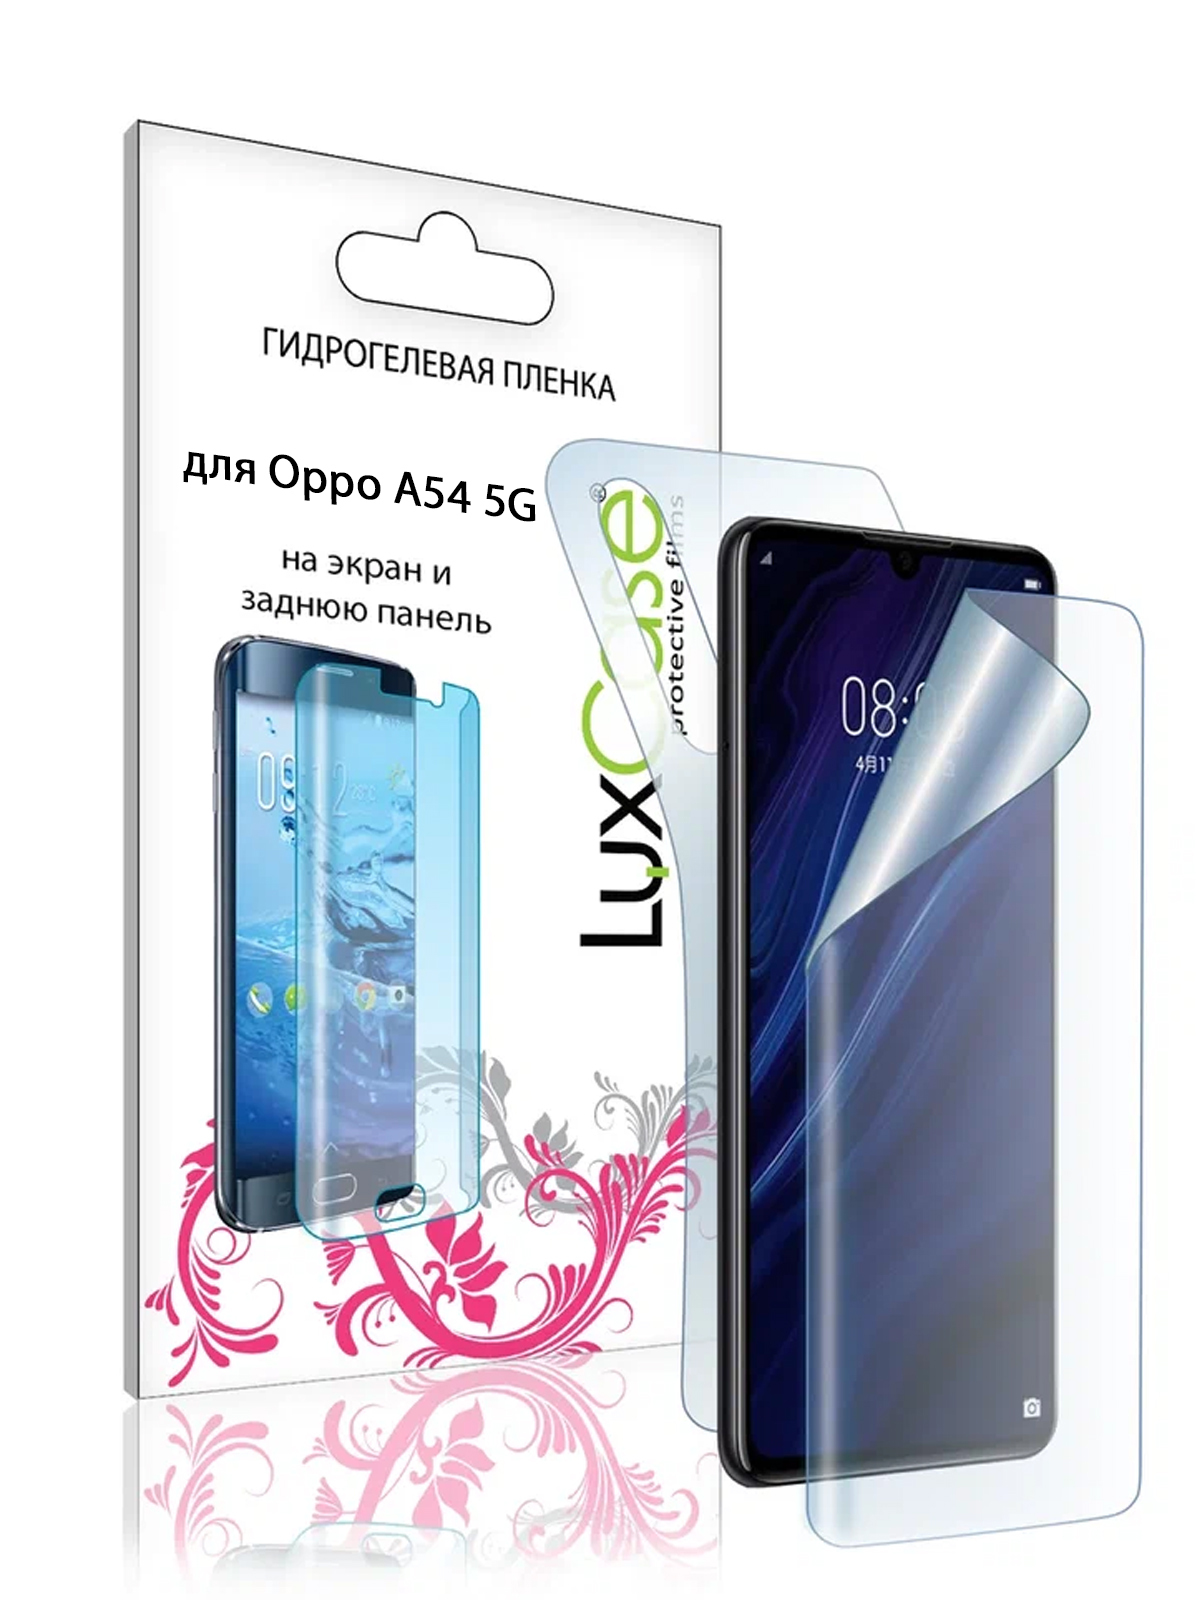 Гидрогелевая пленка LuxCase для Oppo A54 5G 0.14mm Front and Back Transparent 90347 гидрогелевая защитная пленка на заднюю панель для iphone 6 6s глянцевая